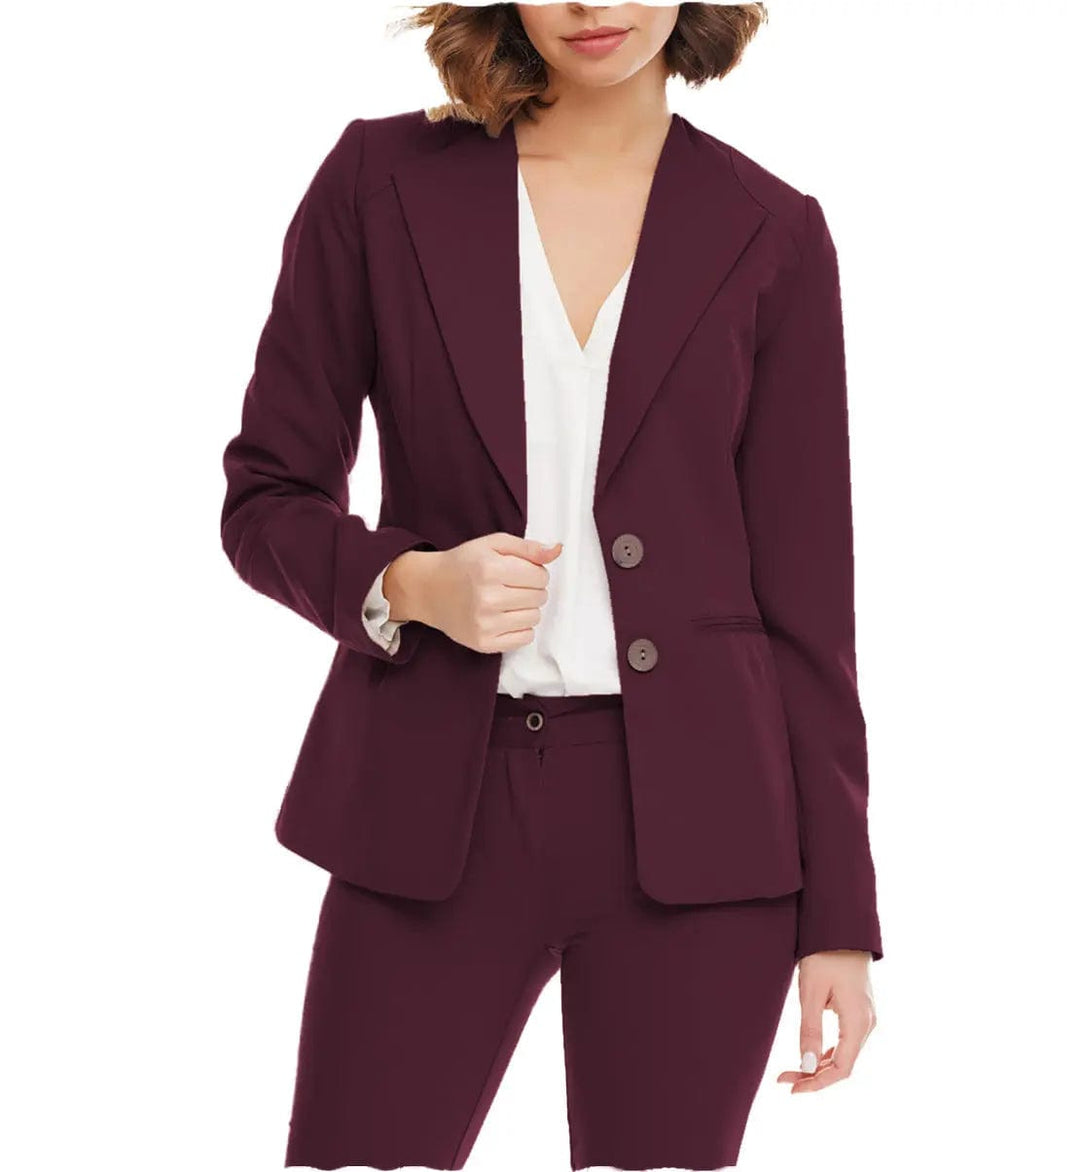 solovedress Women Suit 2 Pieces Peak Lapel Blazer (Blazer+Pants）